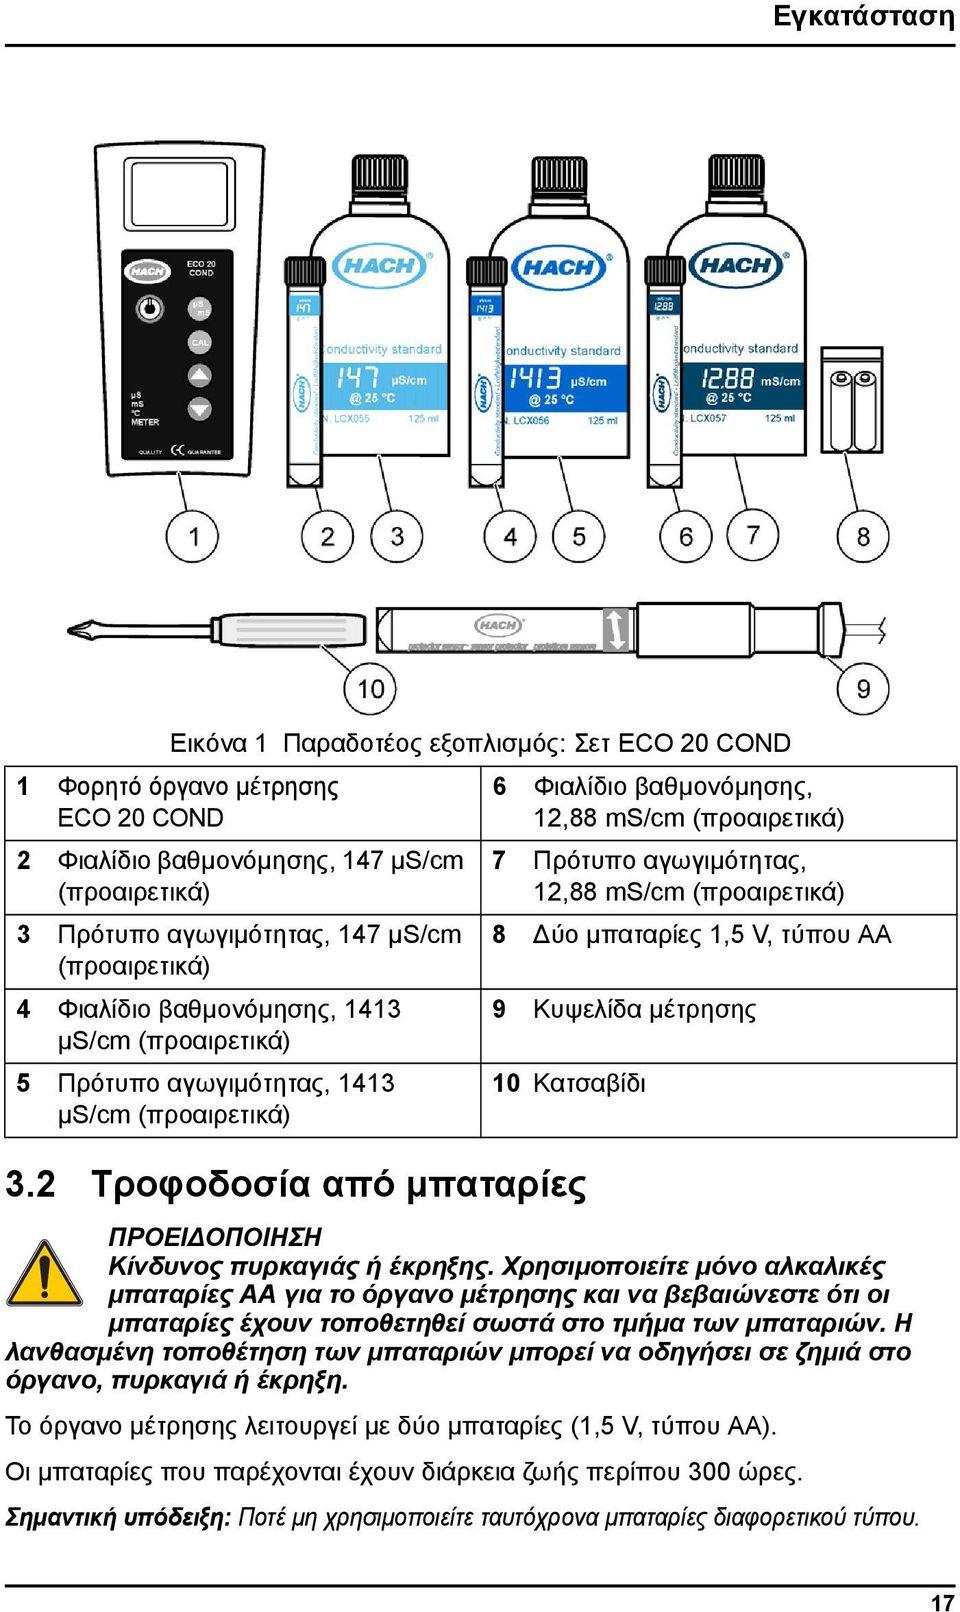 2 Τροφοδοσία από μπαταρίες 6 Φιαλίδιο βαθμονόμησης, 12,88 ms/cm (προαιρετικά) 7 Πρότυπο αγωγιμότητας, 12,88 ms/cm (προαιρετικά) 8 Δύο μπαταρίες 1,5 V, τύπου AA 9 Κυψελίδα μέτρησης 10 Κατσαβίδι